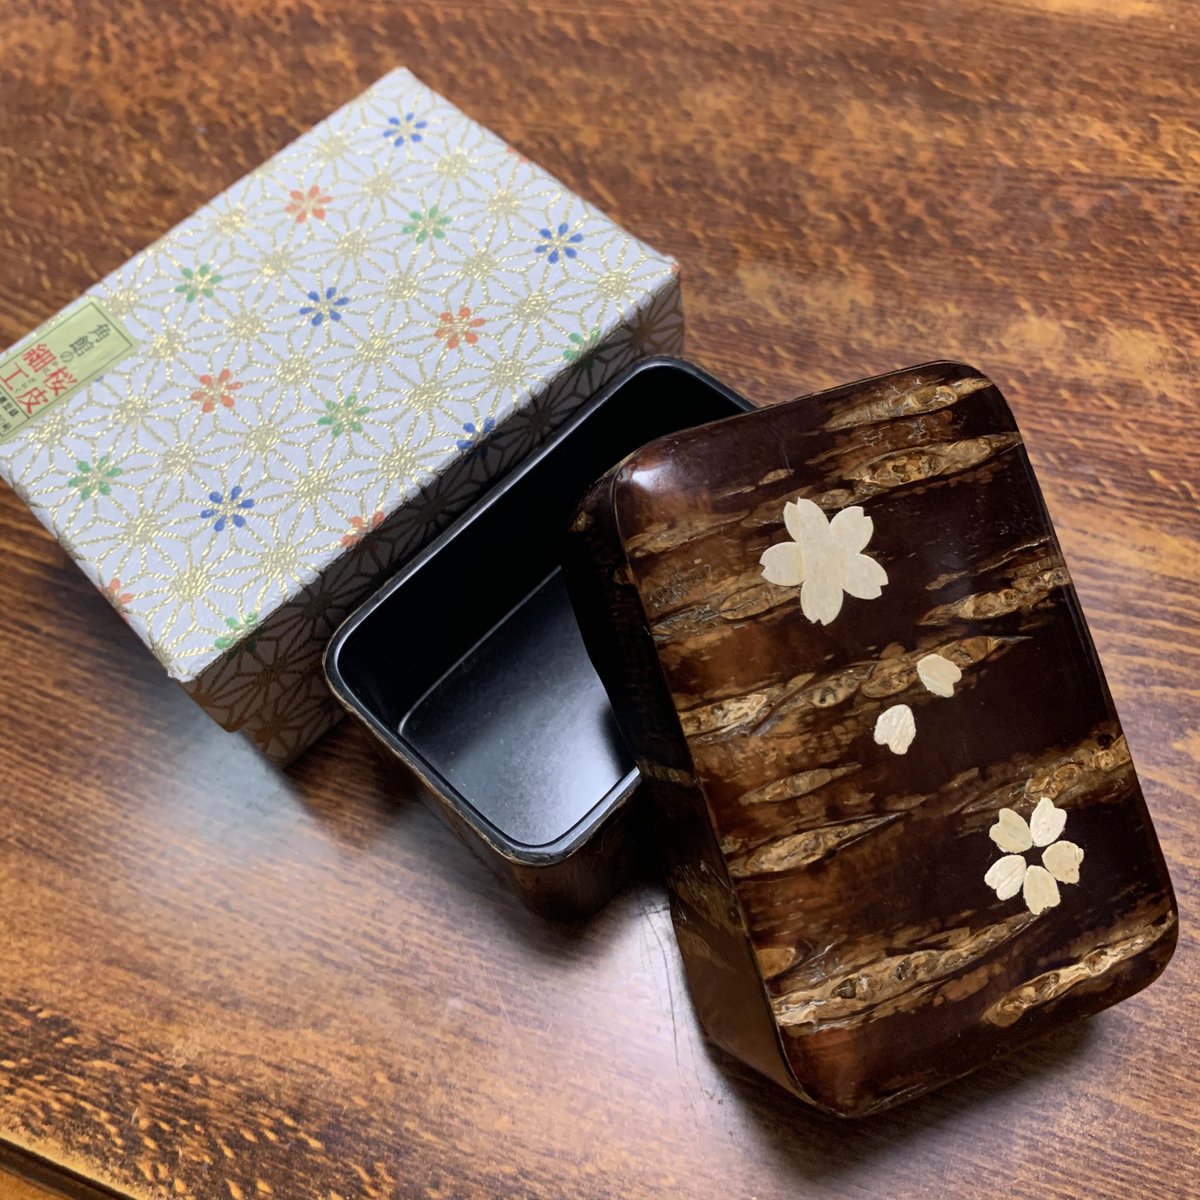 秋田県のお土産貰った！
リクエストは「なにかしらの可愛い伝統工芸品」。
桜皮細工ツヤツヤで可愛いね。
何入れようかなあ……